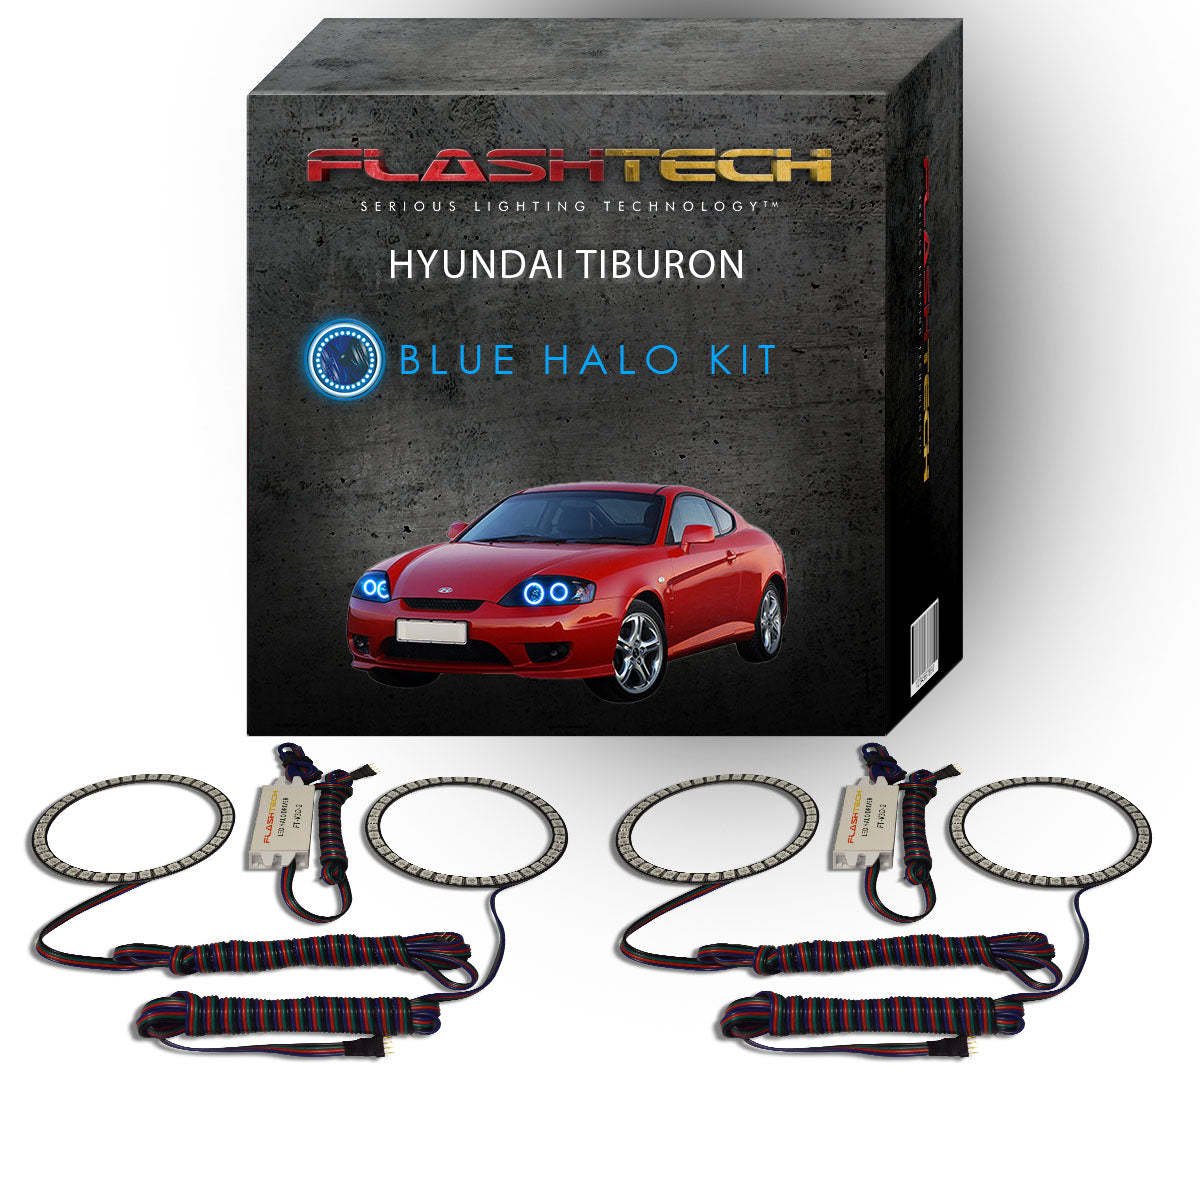 Hyundai-Tiburon-2005, 2006-LED-Halo-Headlights-RGB-No Remote-HY-TB0506-V3H